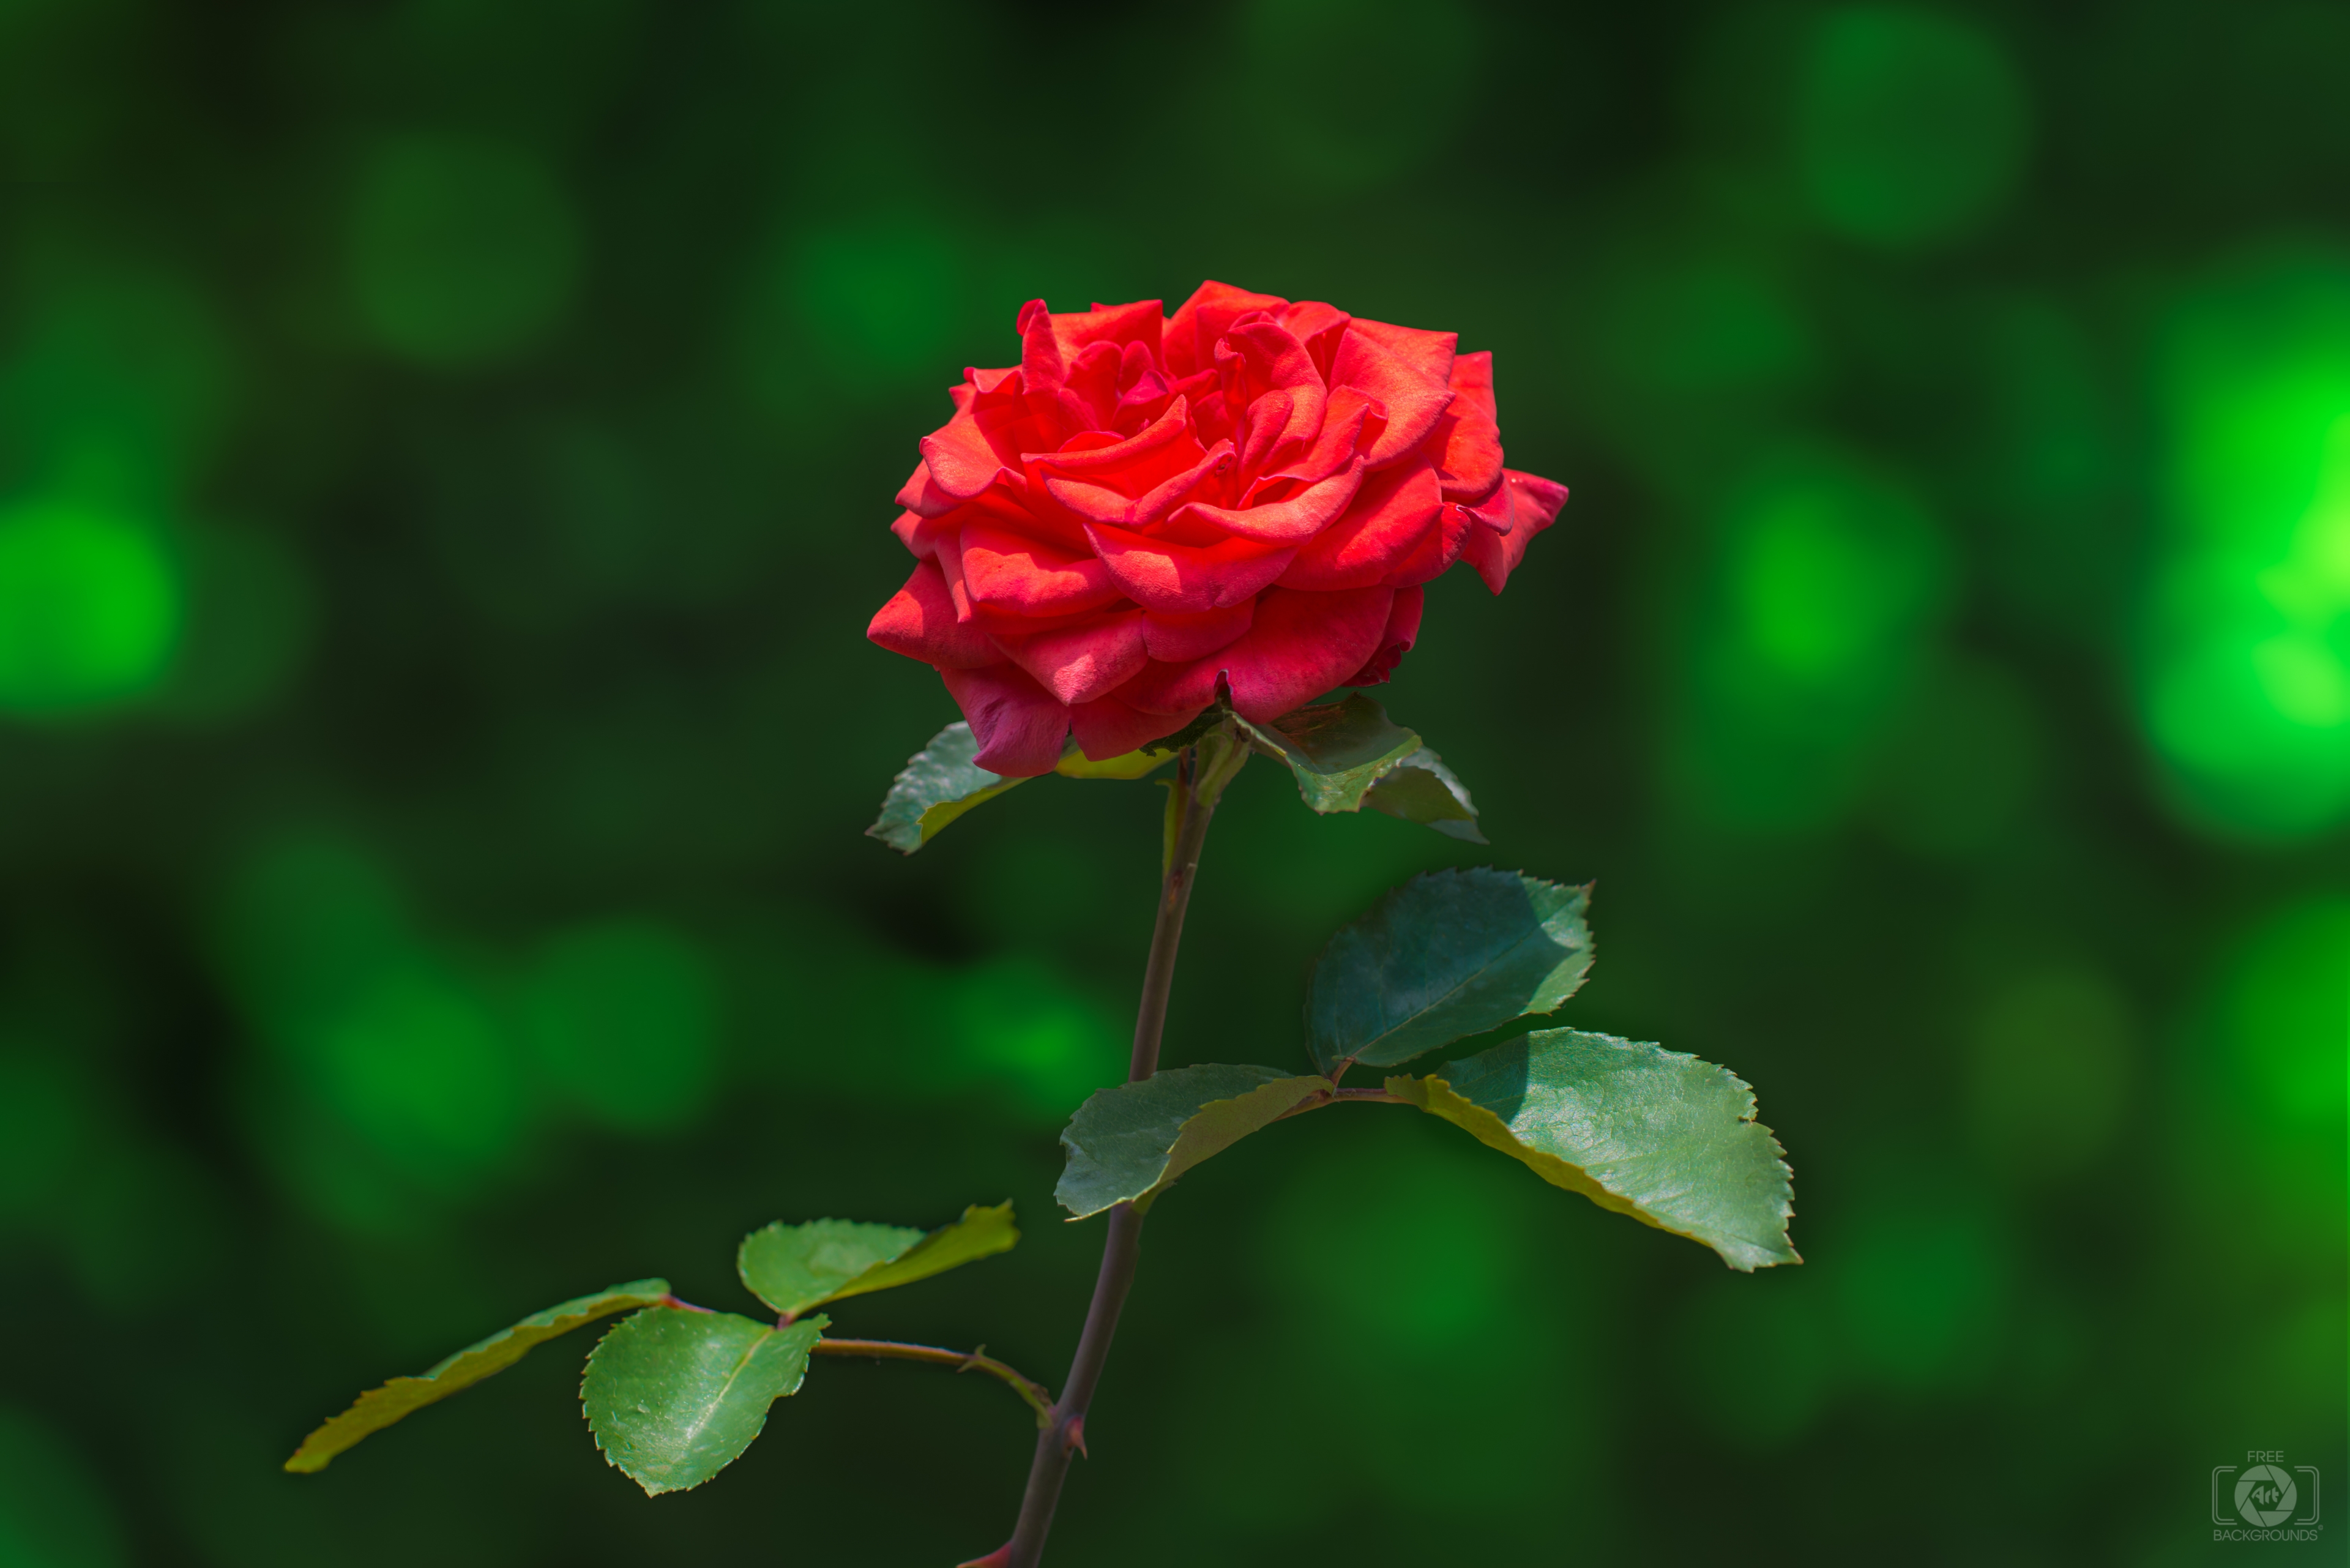 Hãy cùng nhau thưởng thức sự tinh tế và yêu kiều của những bông hoa hồng đỏ tươi sáng hoàn hảo trong từng khung hình.